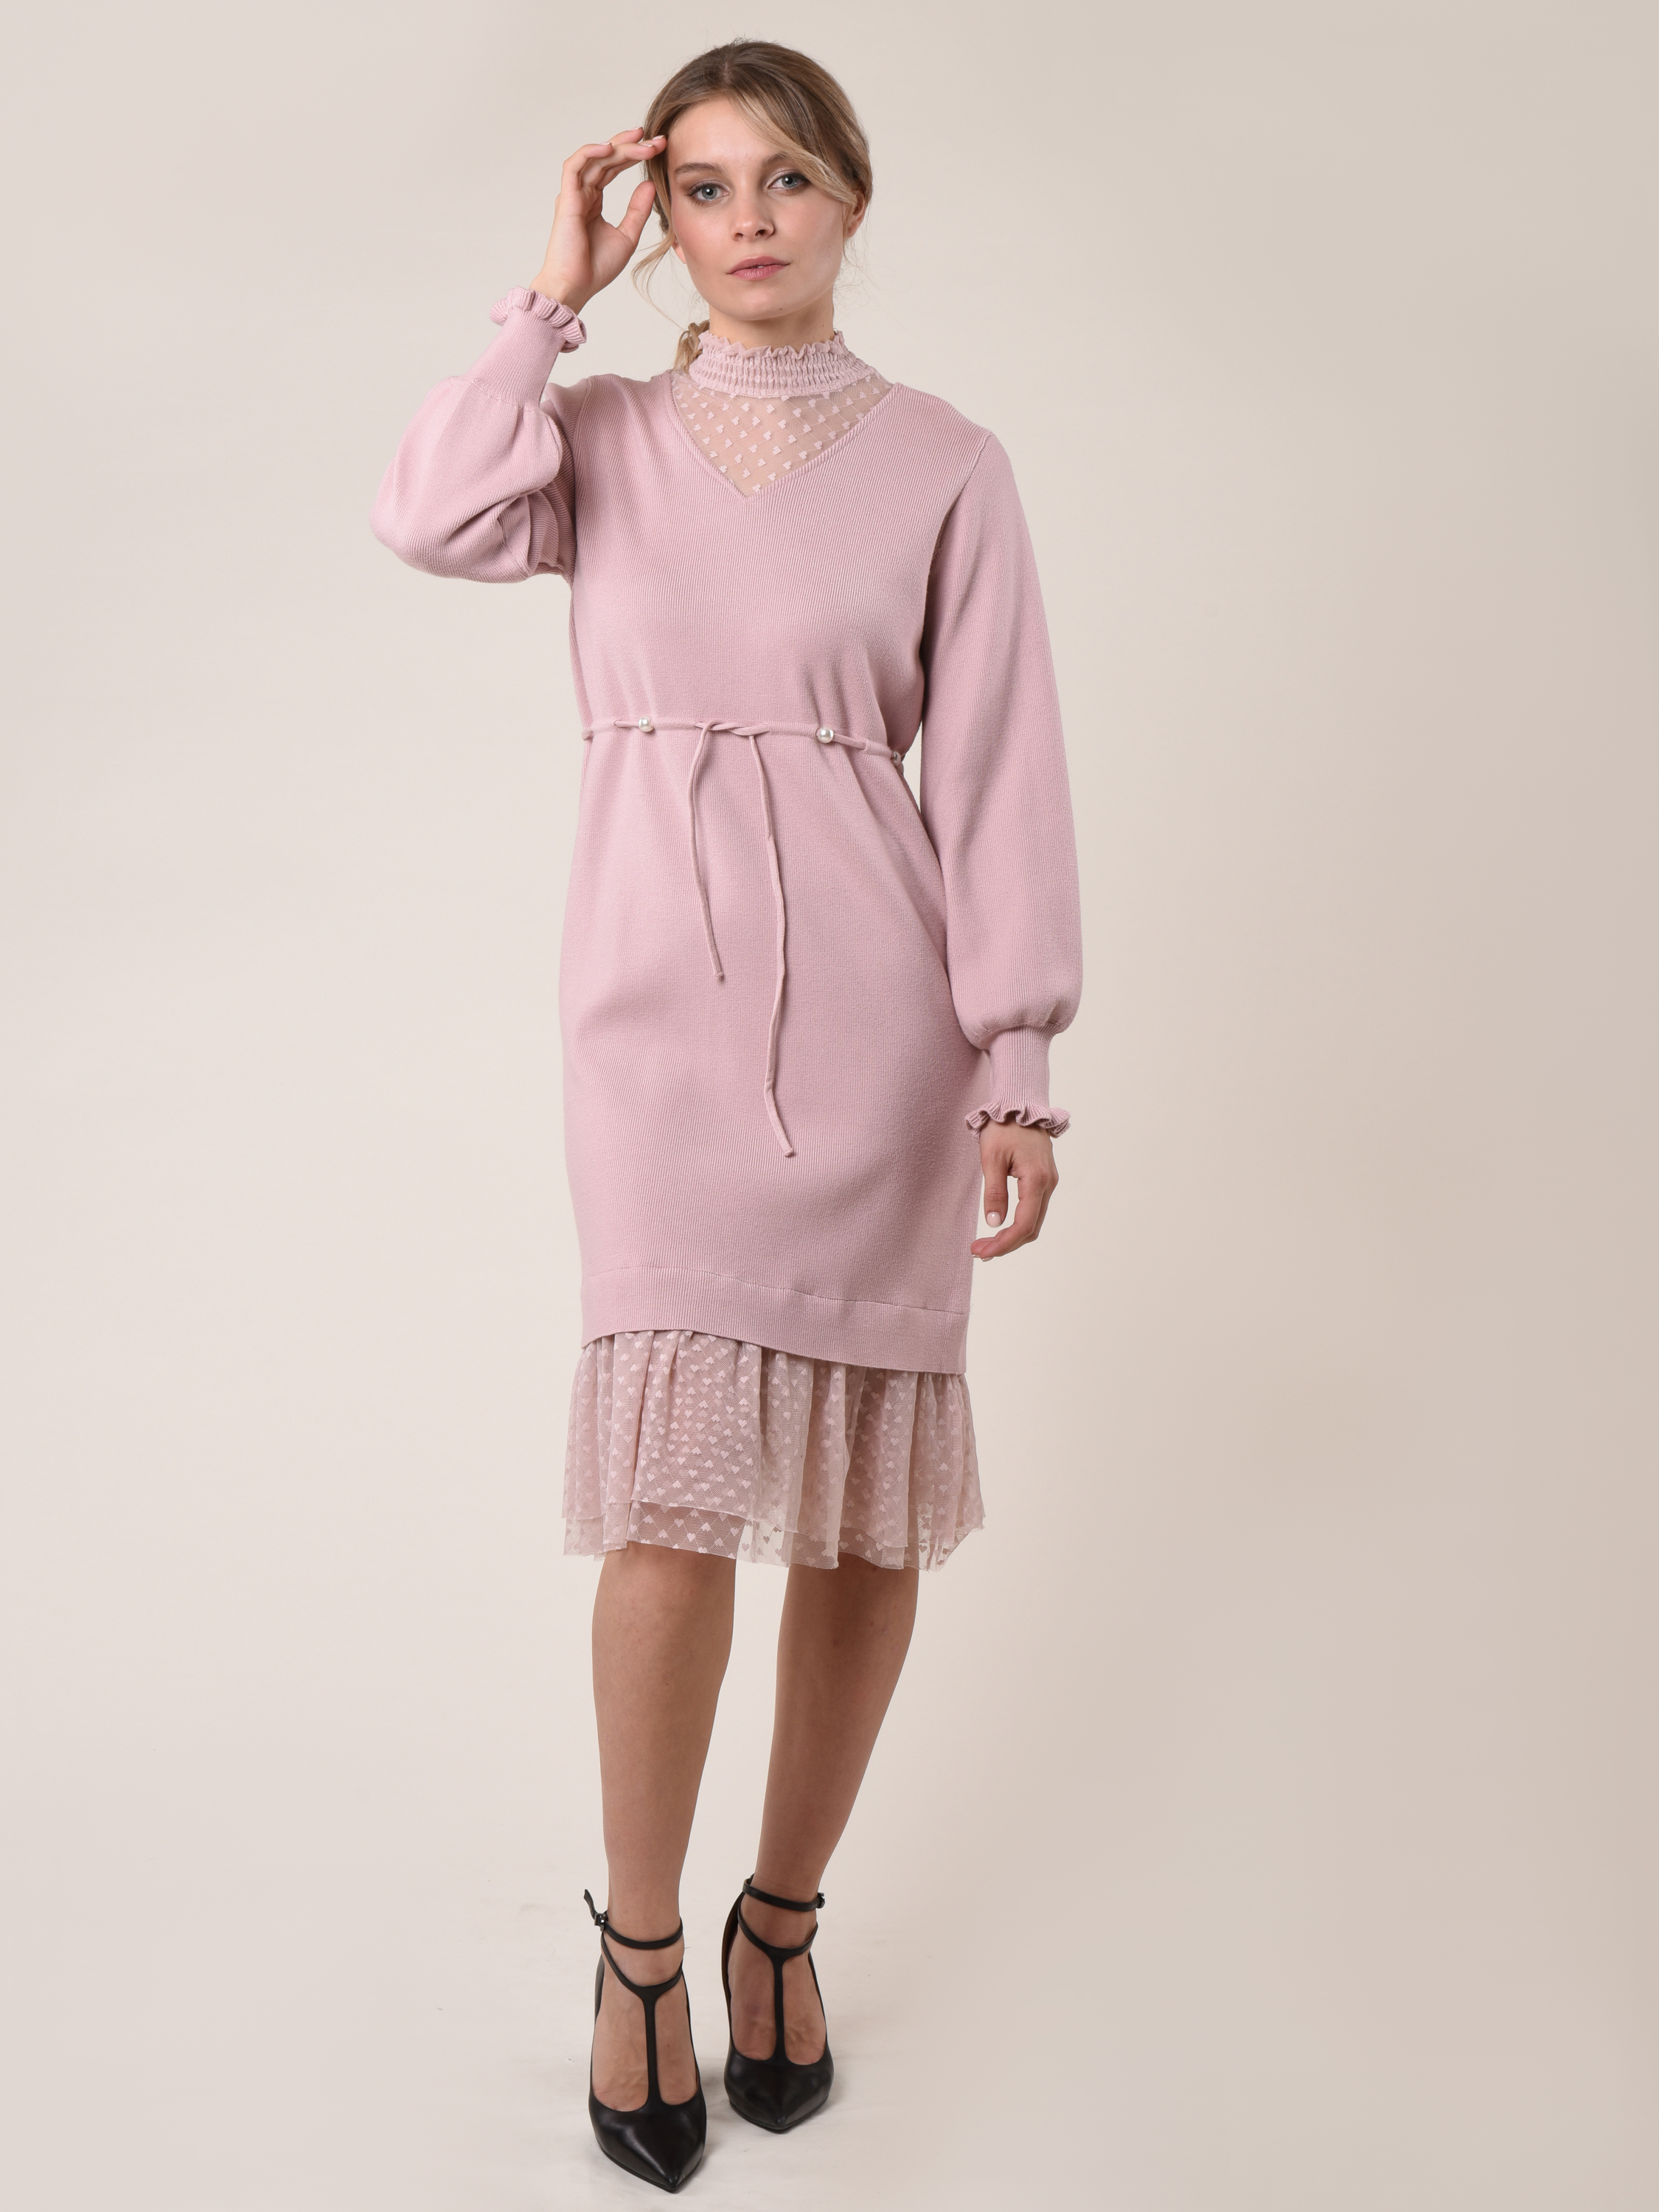 Купить Платье женское вязанное 22PLG06 розовый